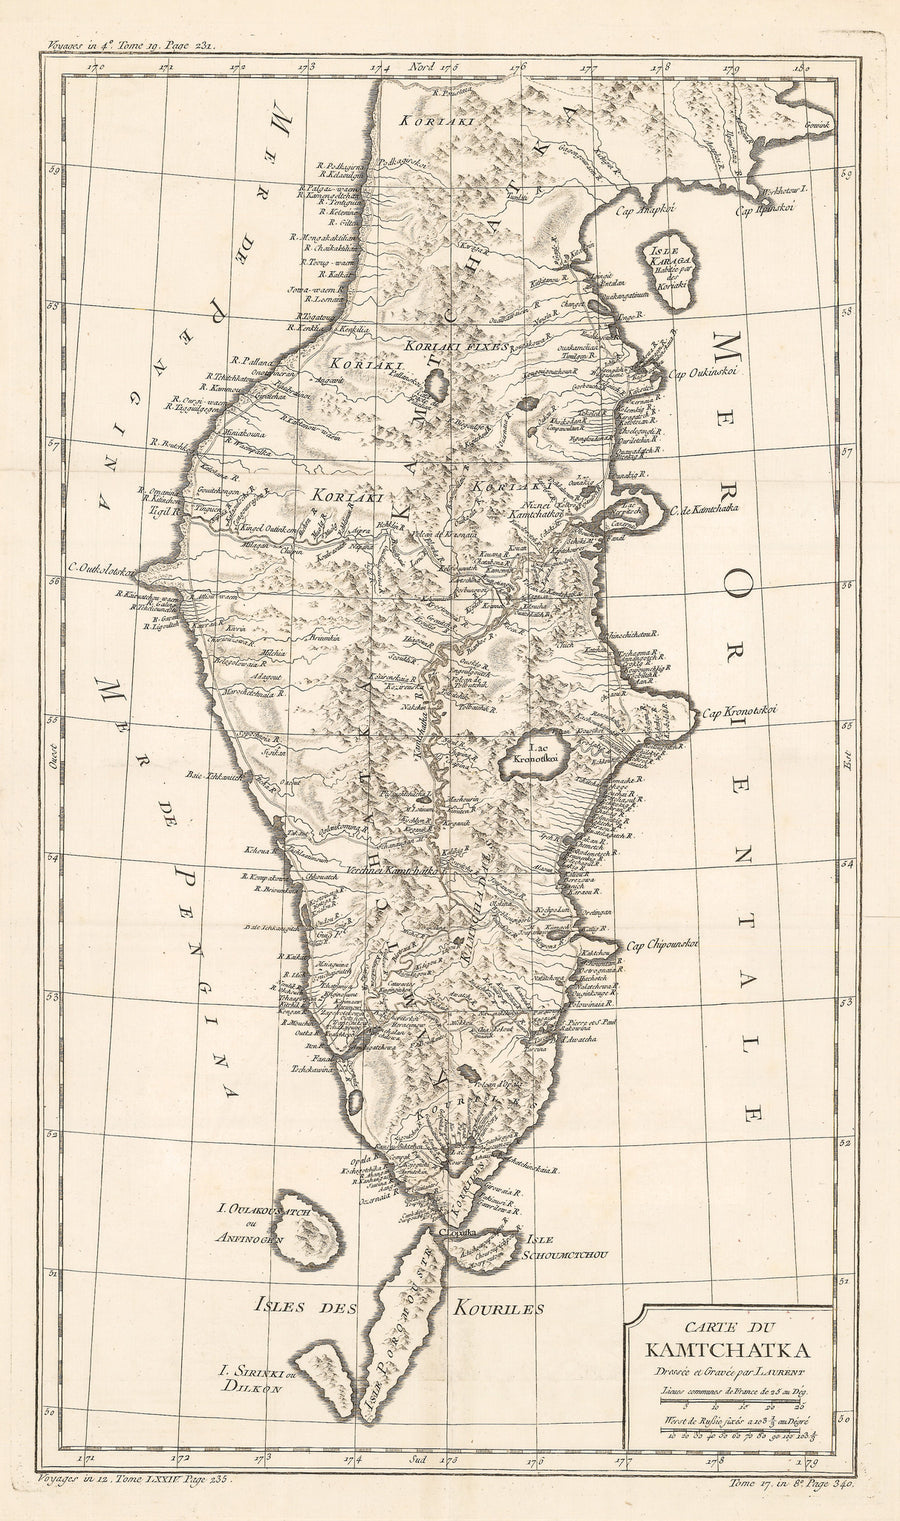 Authentic Antique Map of Kamchatka, Russia: Carte du Kamtchatka Dressee et Gravee par Laurent  By: Jacques Nicholas Bellin  Date: 1757 (published) Paris 